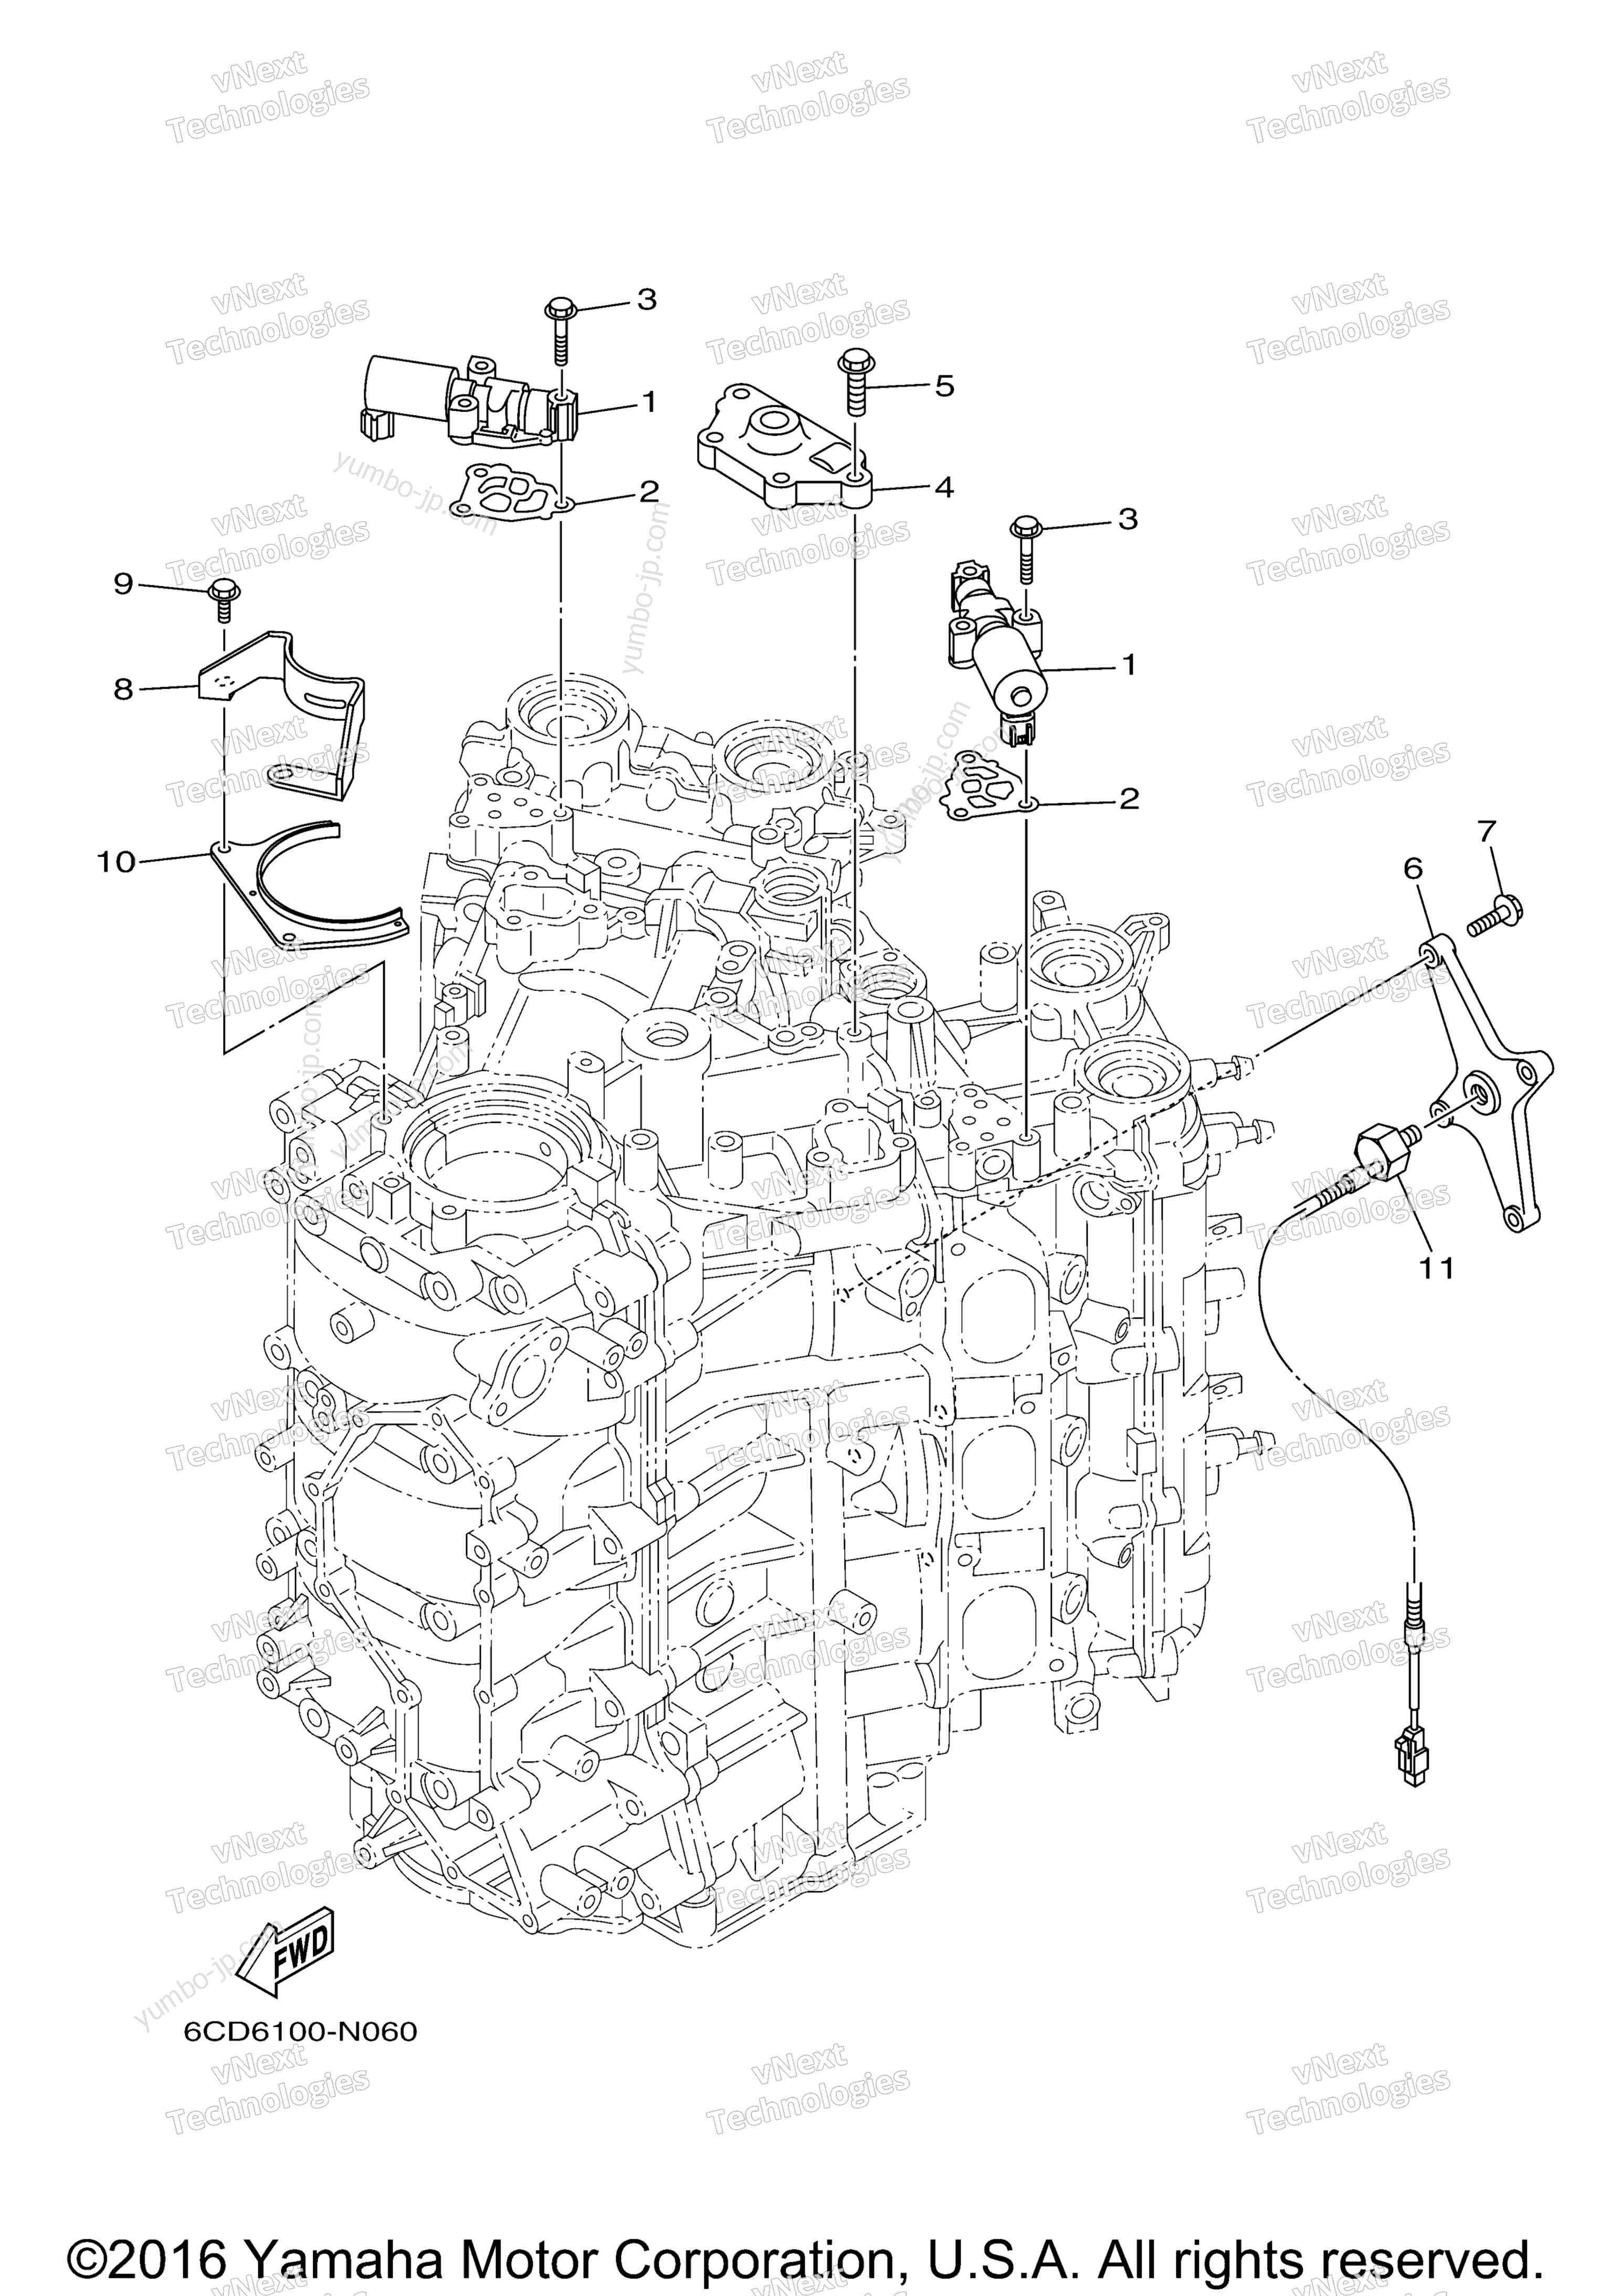 Cylinder Crankcase 3 для лодочных моторов YAMAHA F300NCA (0116) 2006 г.